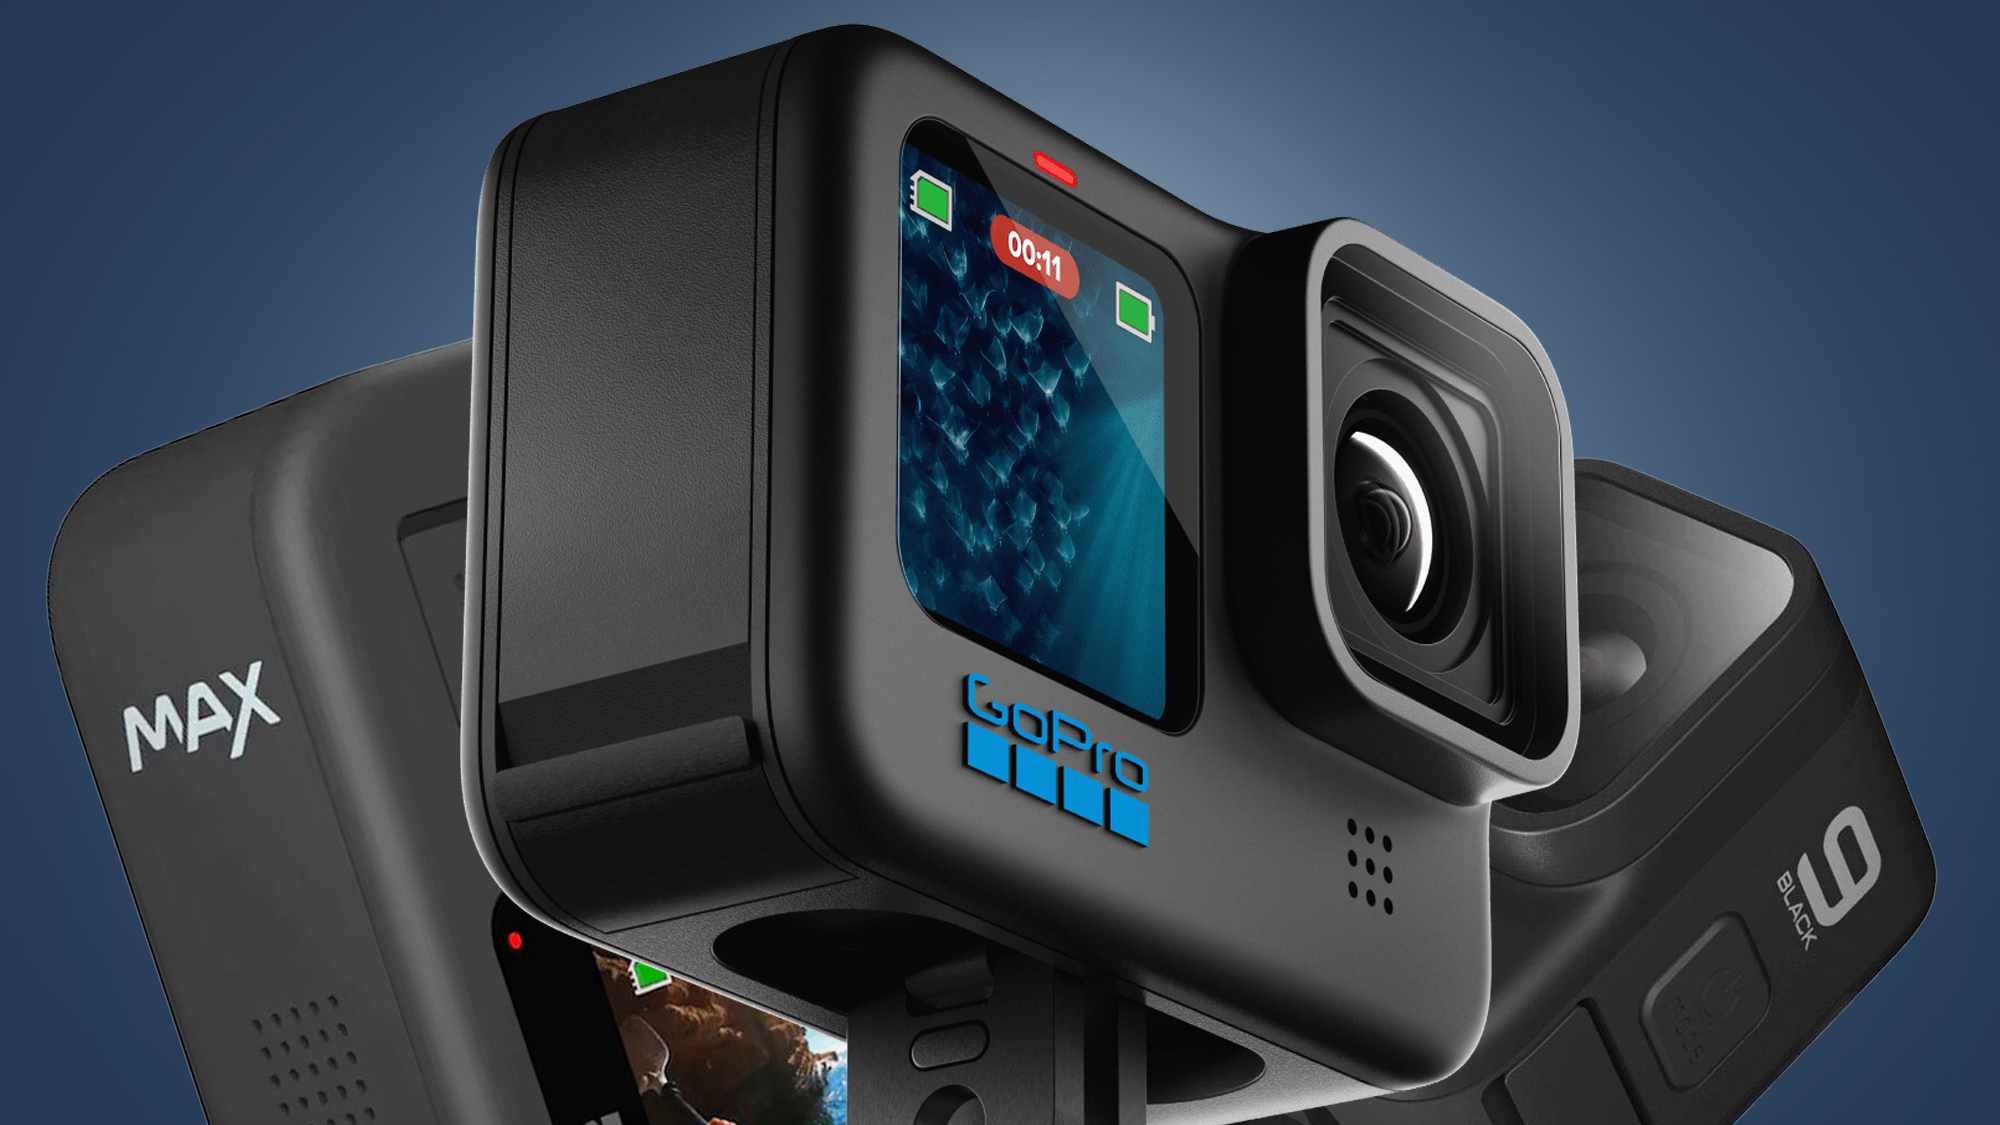 Nuevas cámaras de acción GoPro Hero8 y GoPro Max, con doble lente